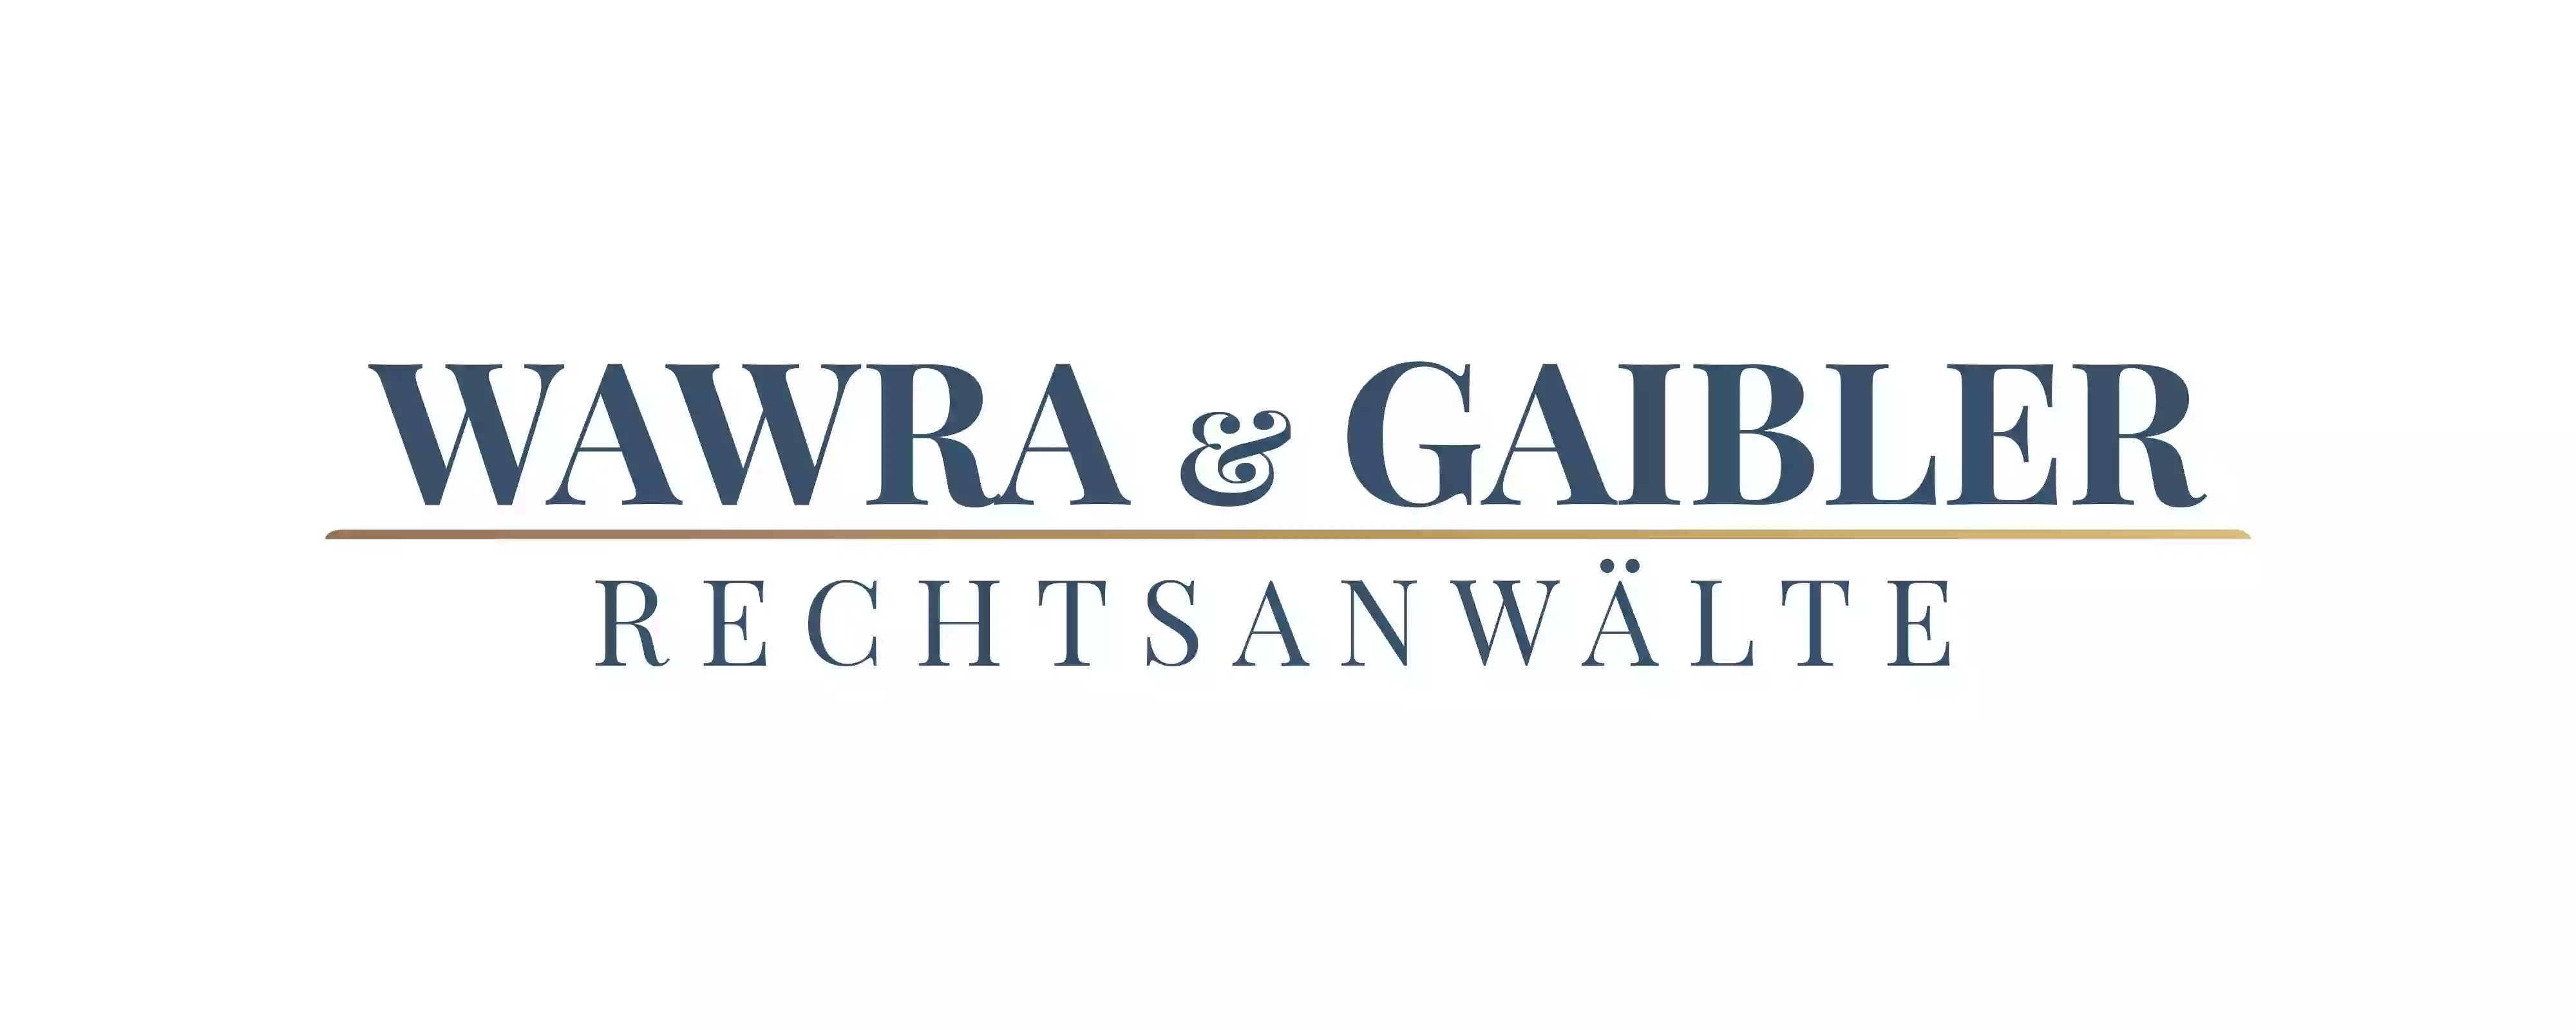 Wawra & Gaibler Rechtsanwalts GmbH - Verbraucherschutz und Arbeitsrecht Rechtsanwälte